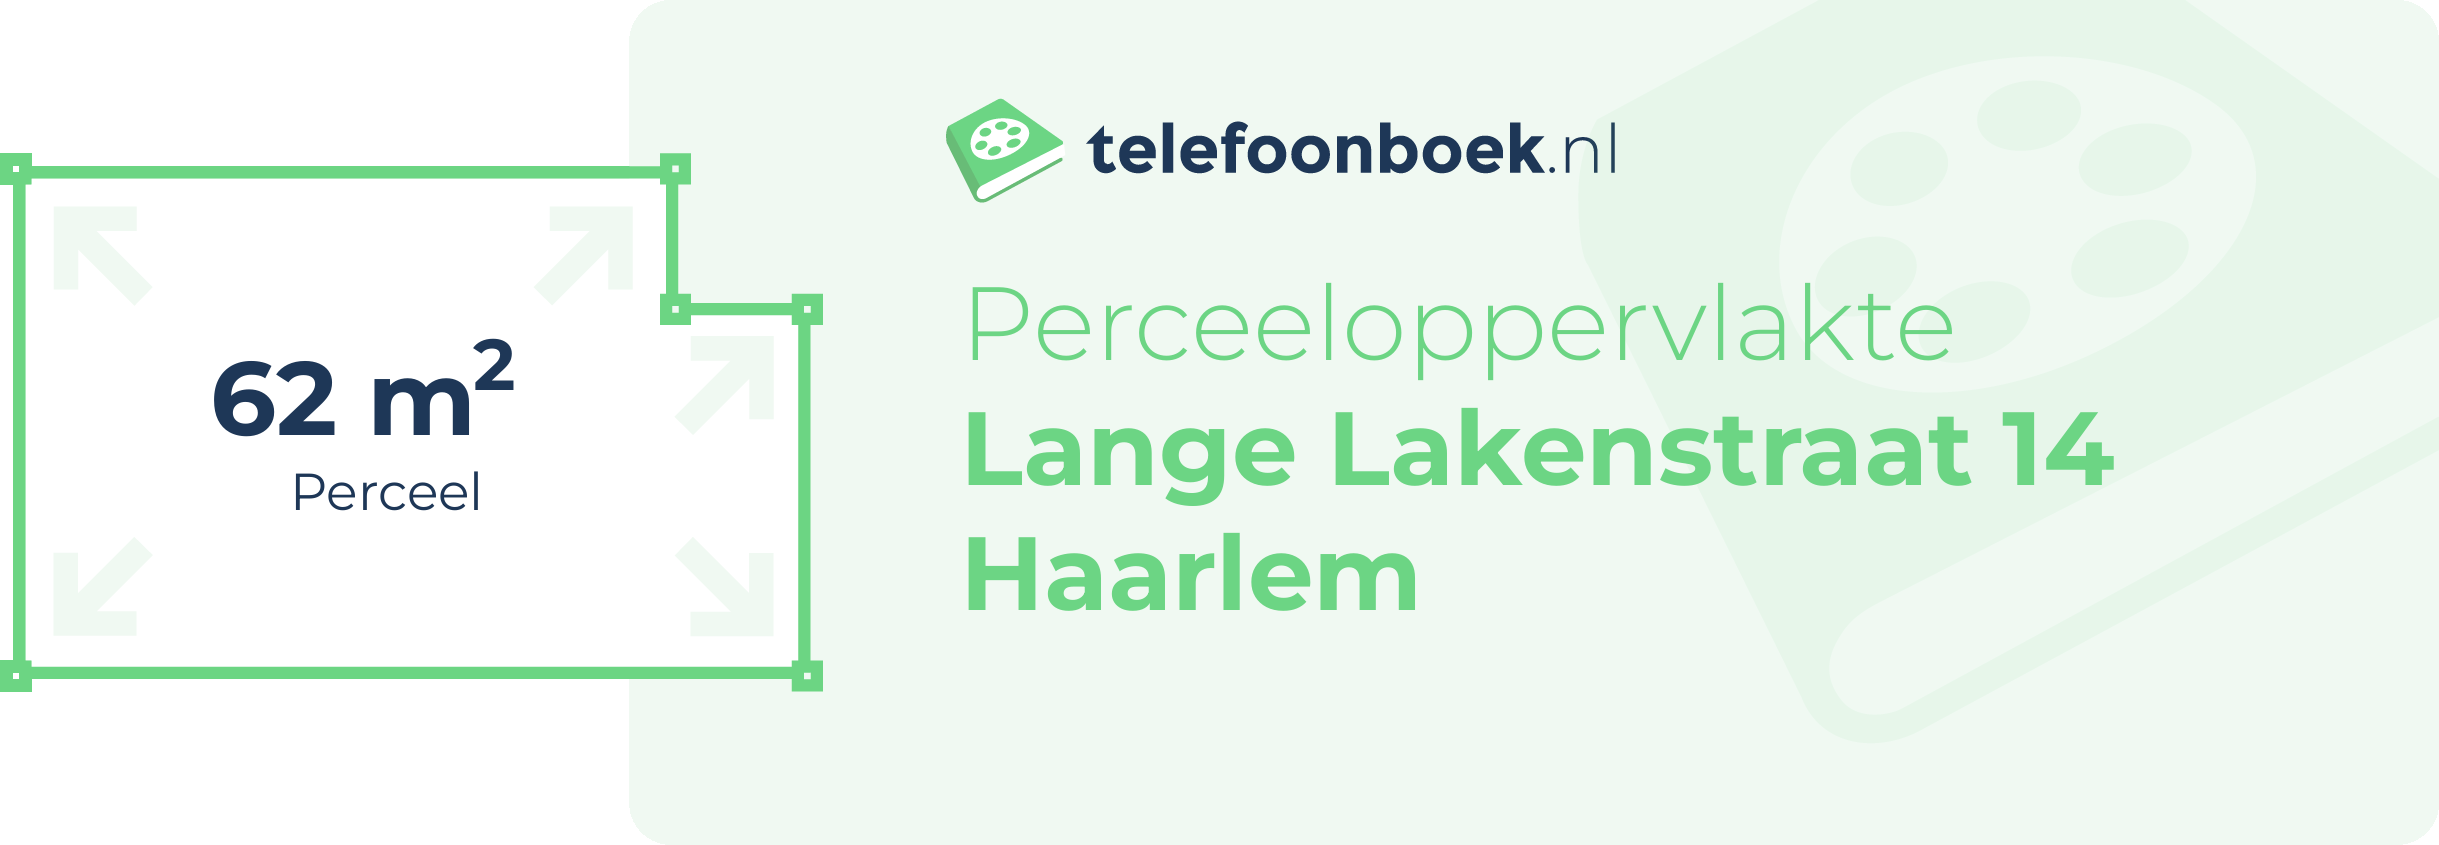 Perceeloppervlakte Lange Lakenstraat 14 Haarlem